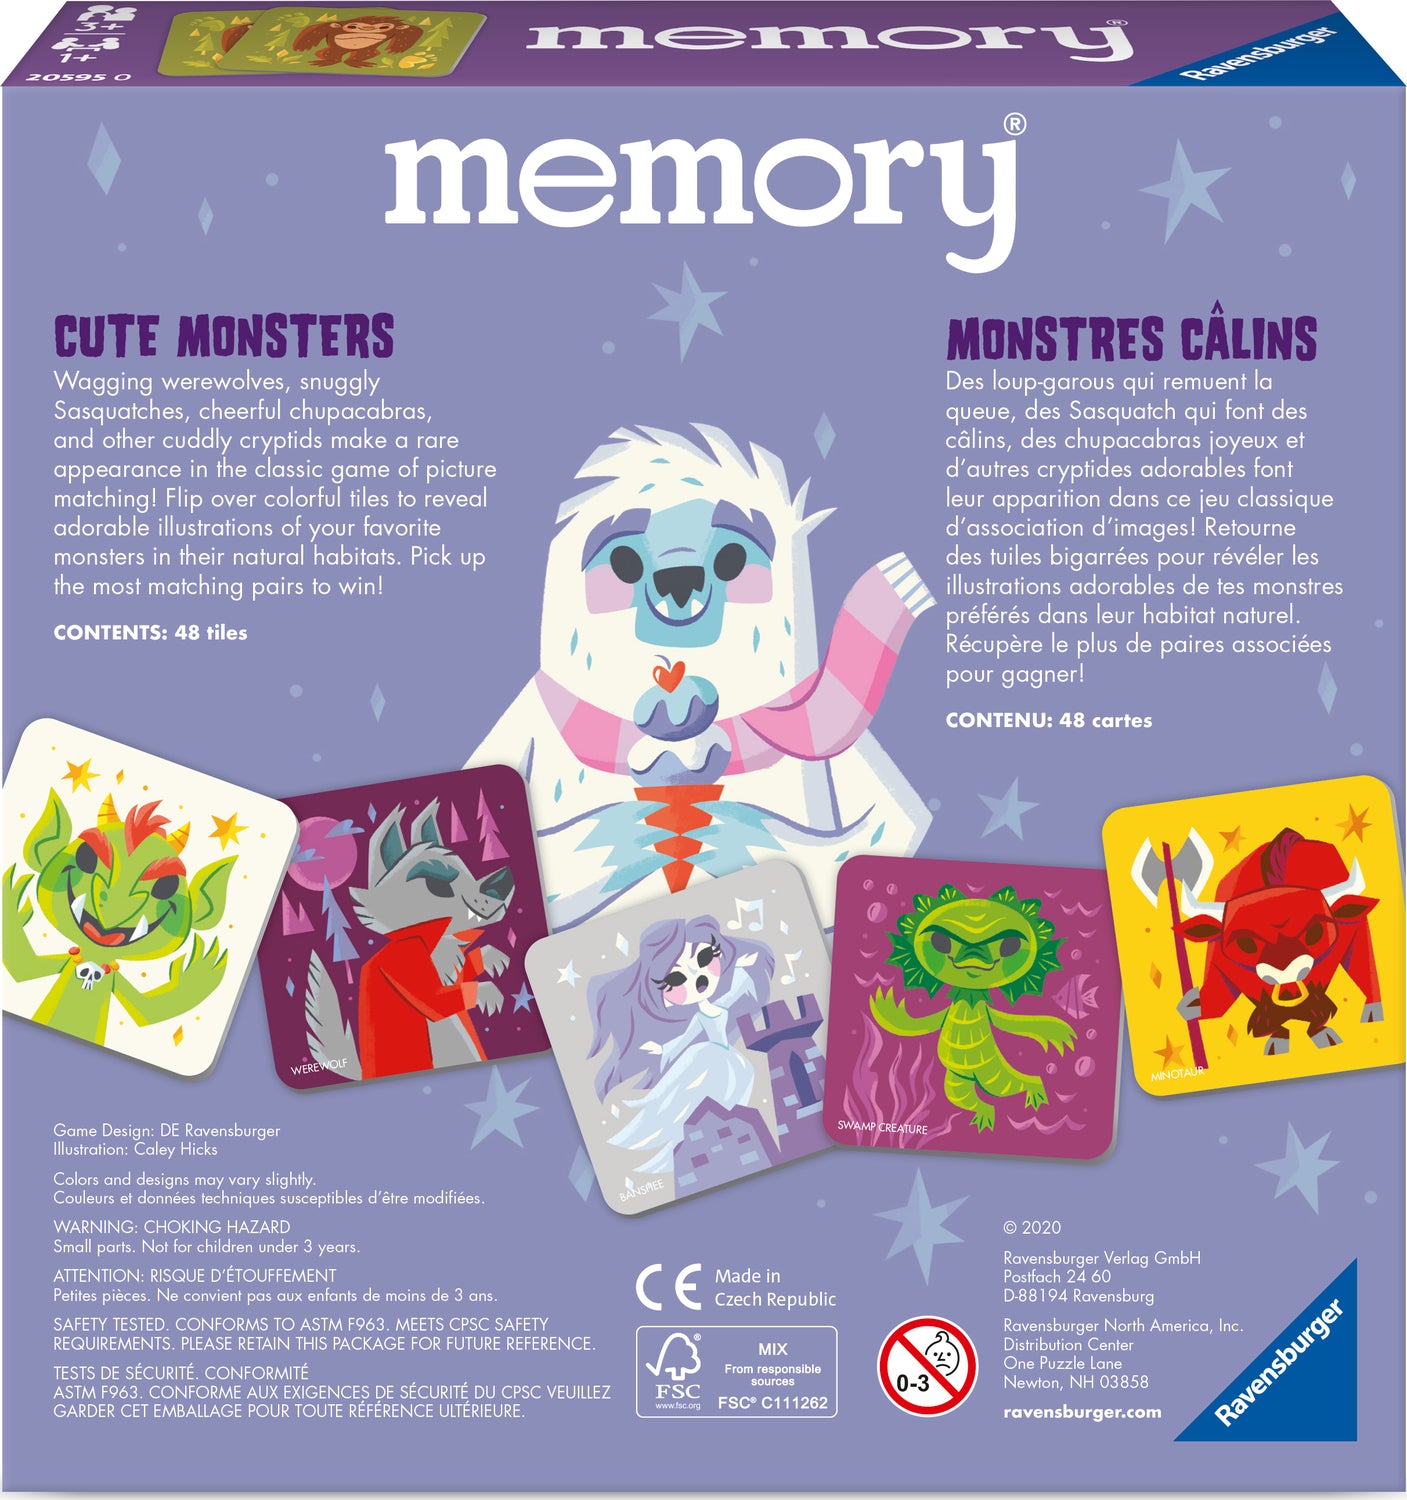 Cute Monsters memory